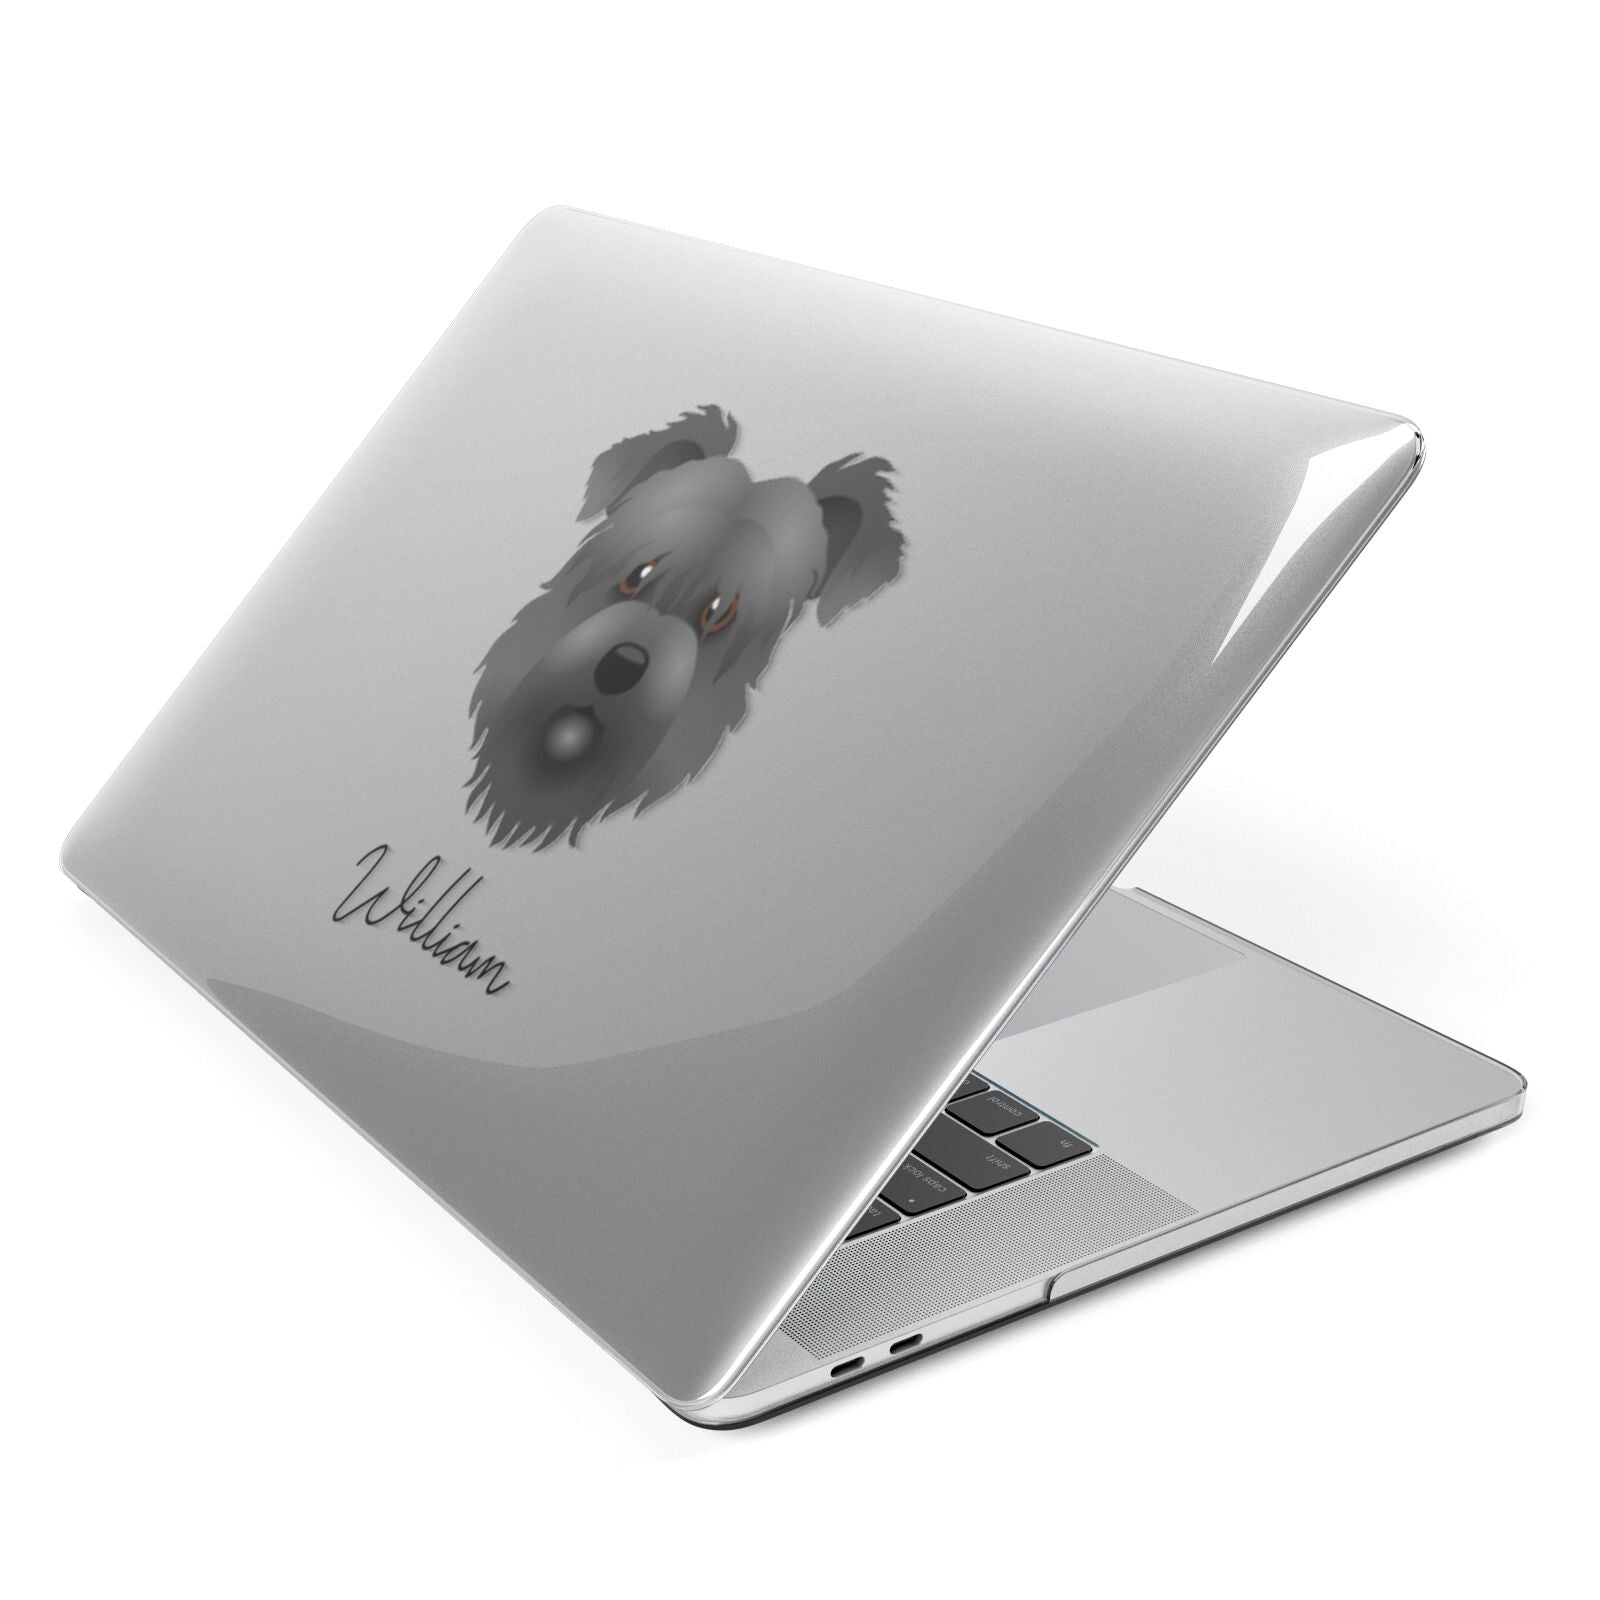 Glen Of Imaal Terrier Personalised Apple MacBook Case Side View